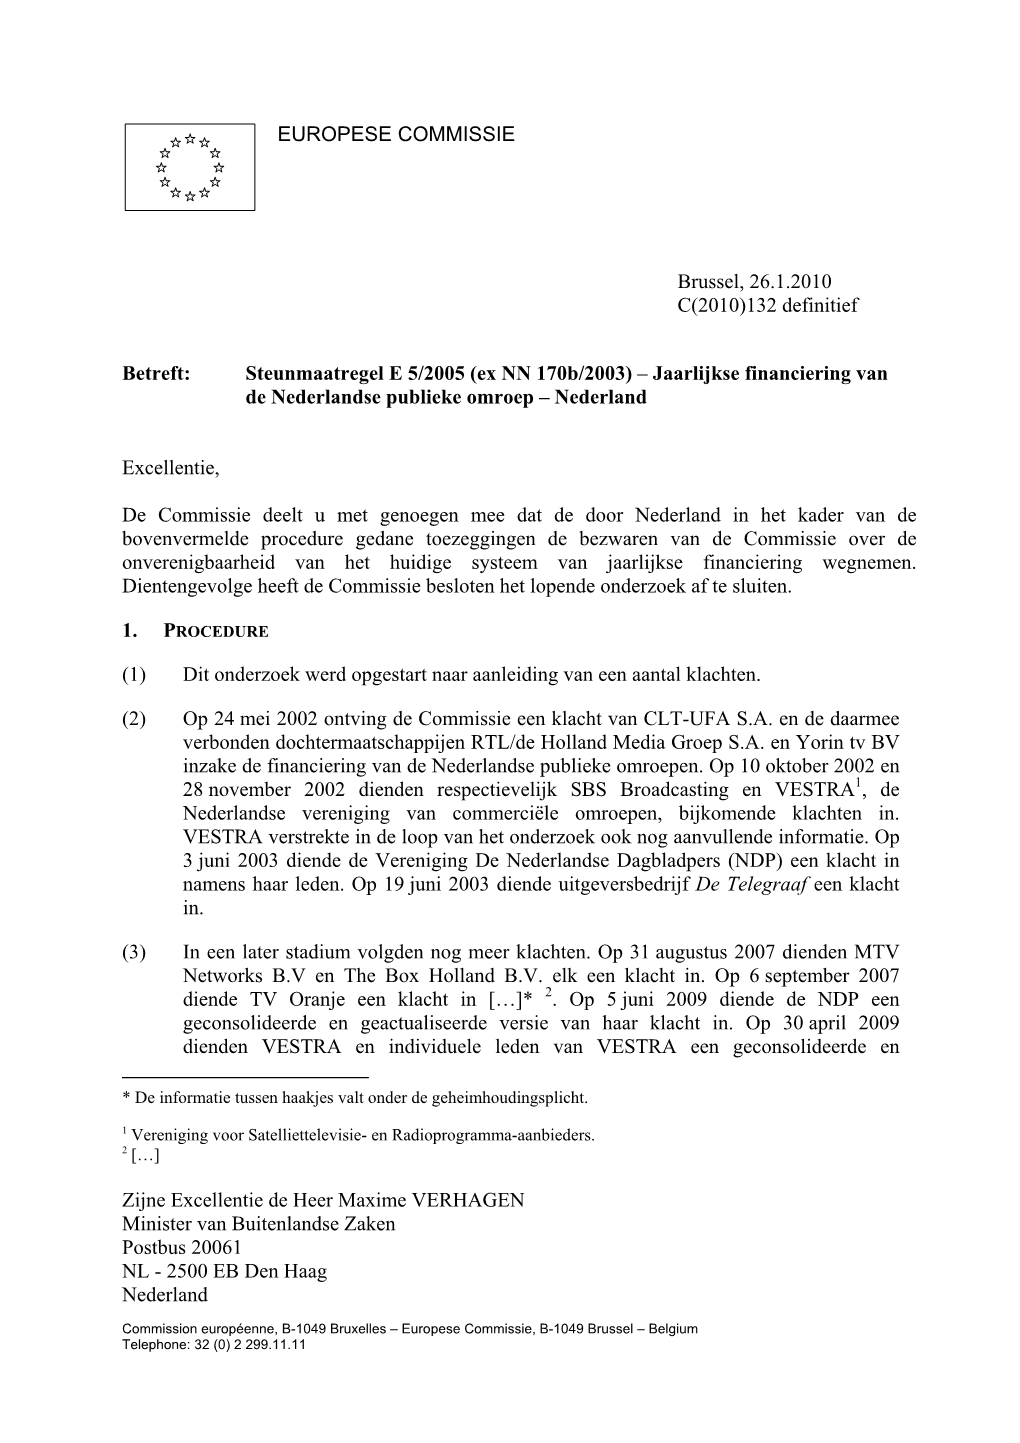 Letter to MS E5 2005 Nonconfidential NL 16022010